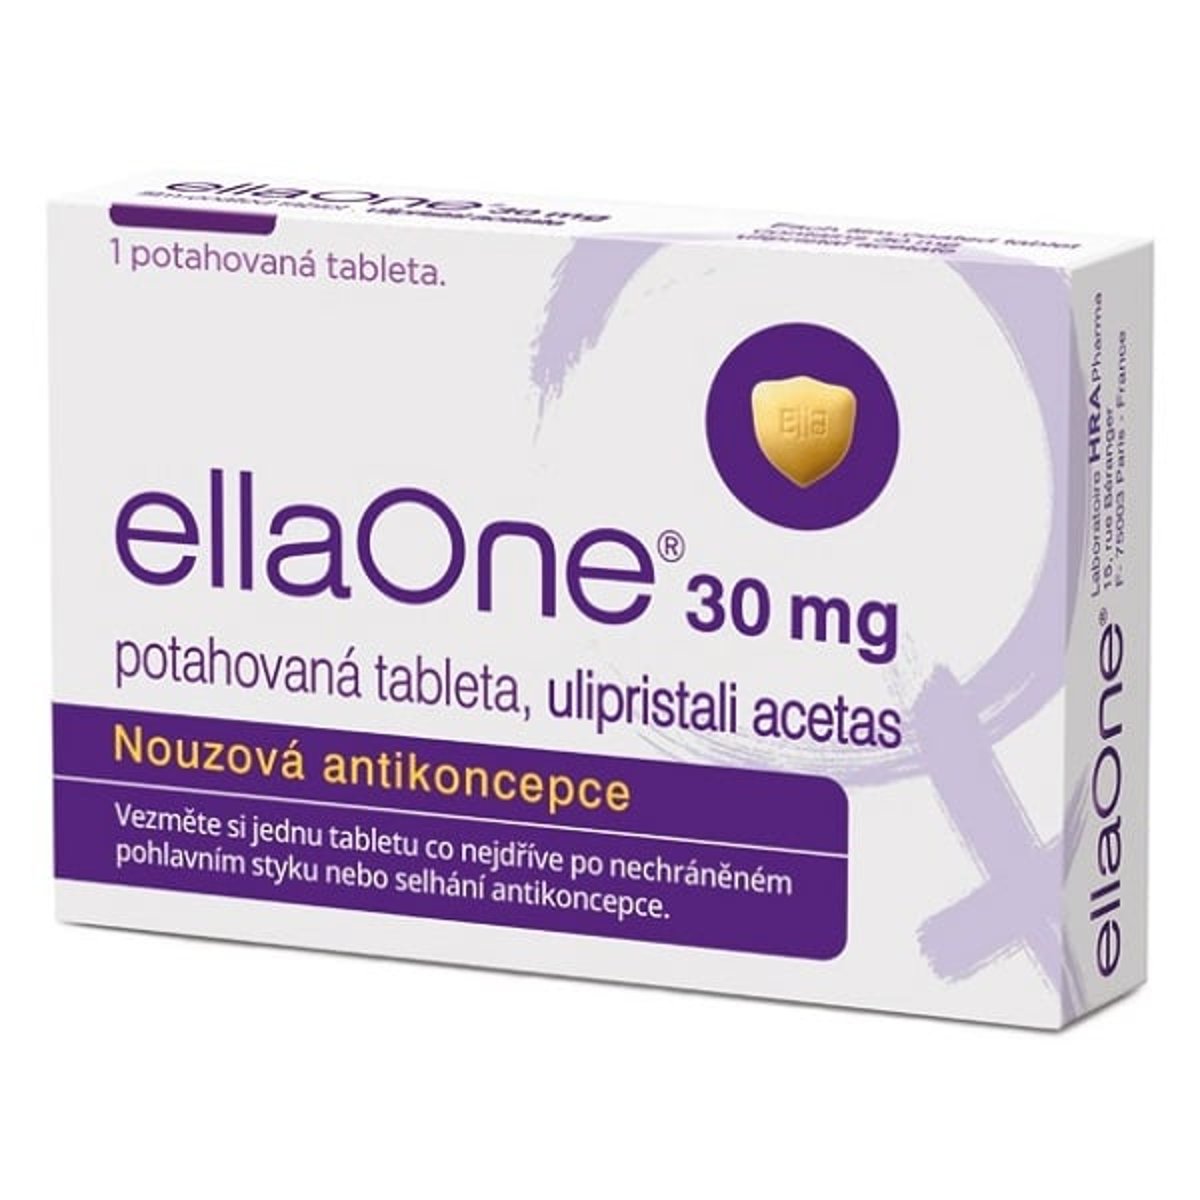 ELLAONE 30MG Potahovaná tableta 1